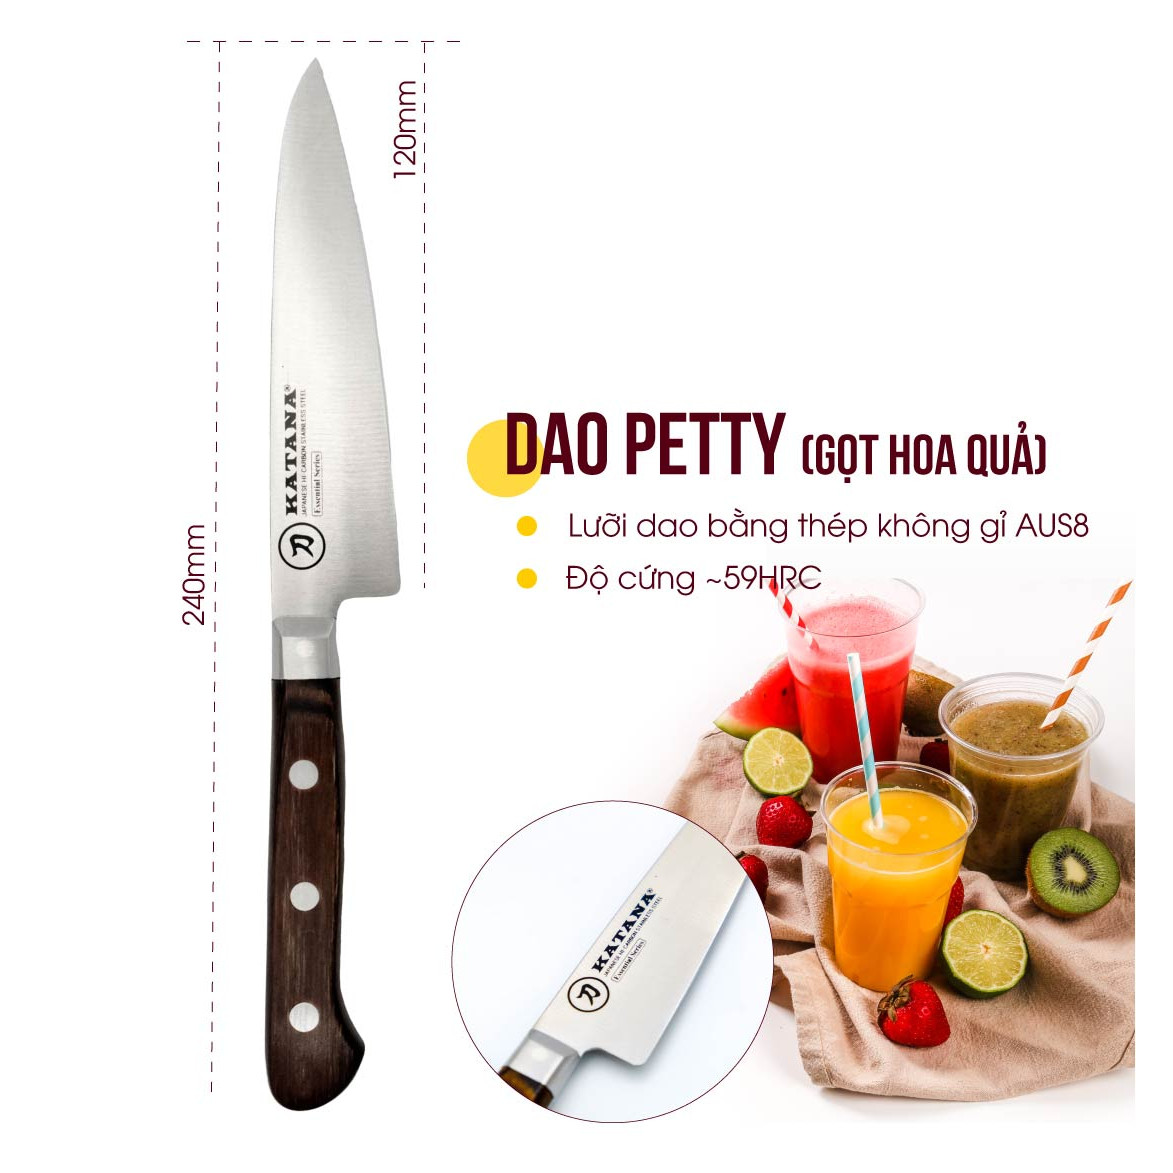 Bộ 3 chiếc dao bếp cao cấp thương hiệu KATANA (dao thái thịt cá - dao chặt - dao gọt hoa quả) - Bộ dao KATANA cán gỗ, thép chống gỉ độ cứng 59HRC KATASET001